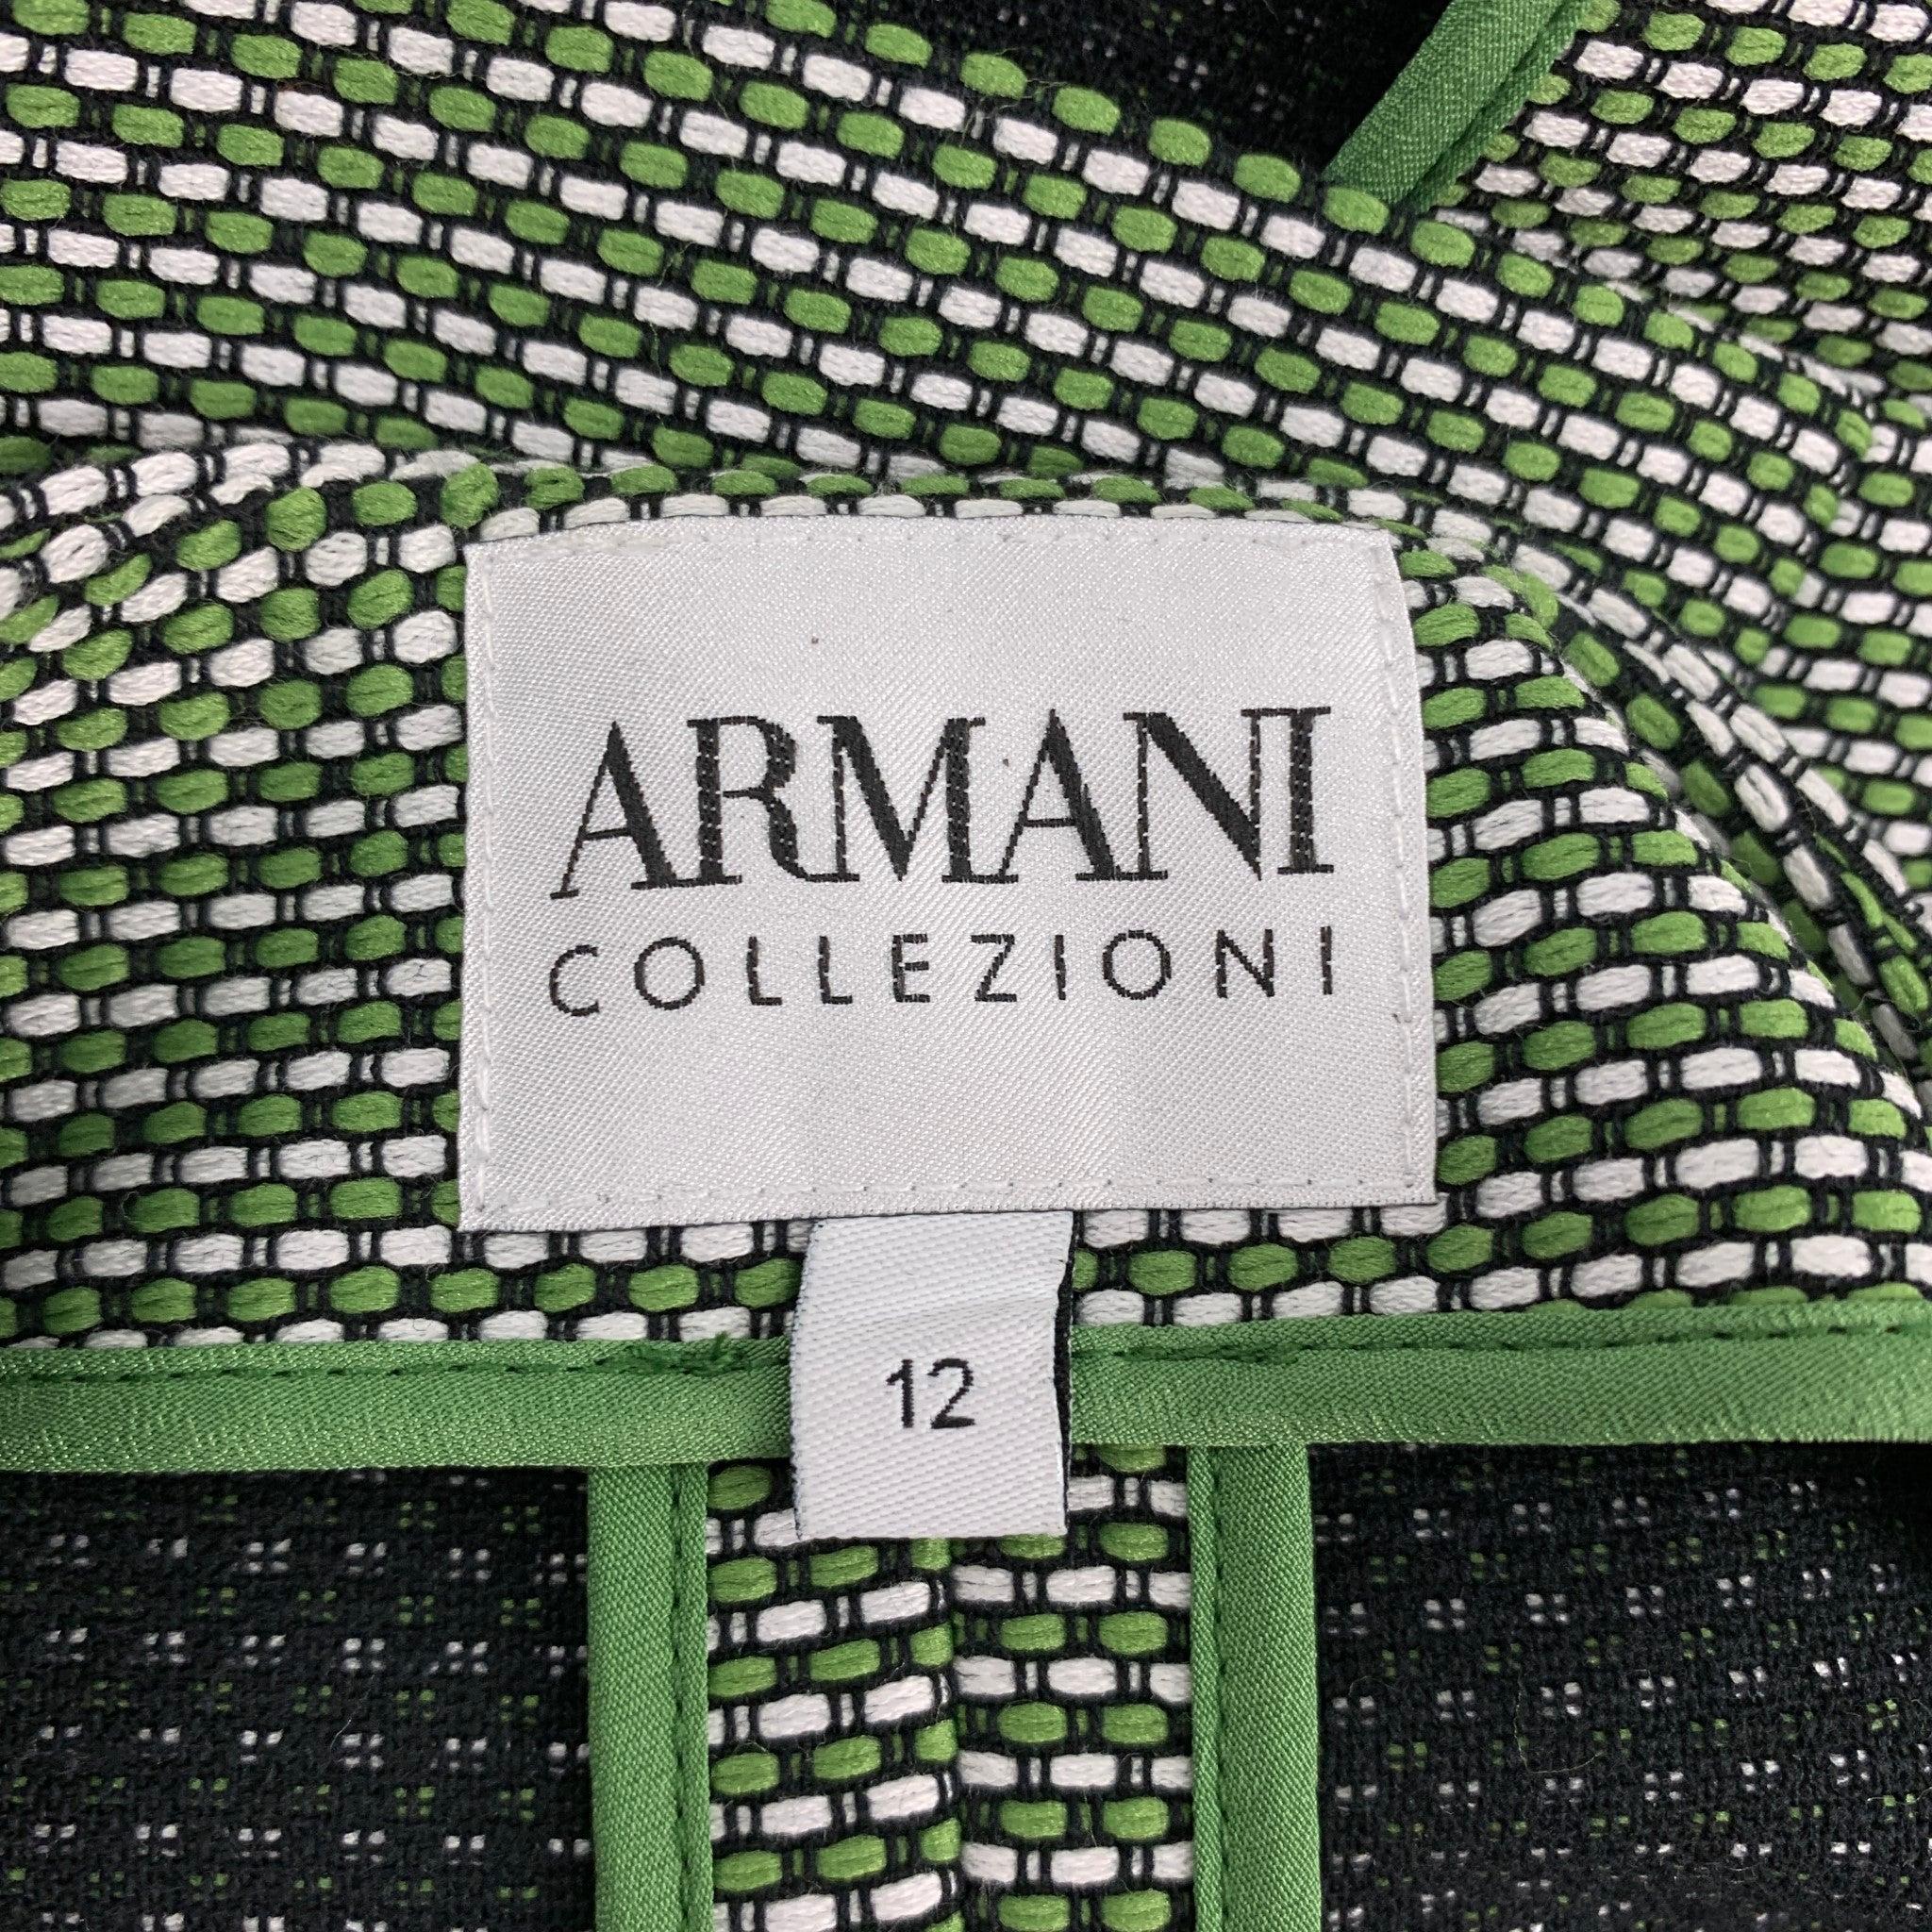 ARMANI COLLEZIONI Size 12 Green & White Woven Textured Cotton / Polyester Jacket 3